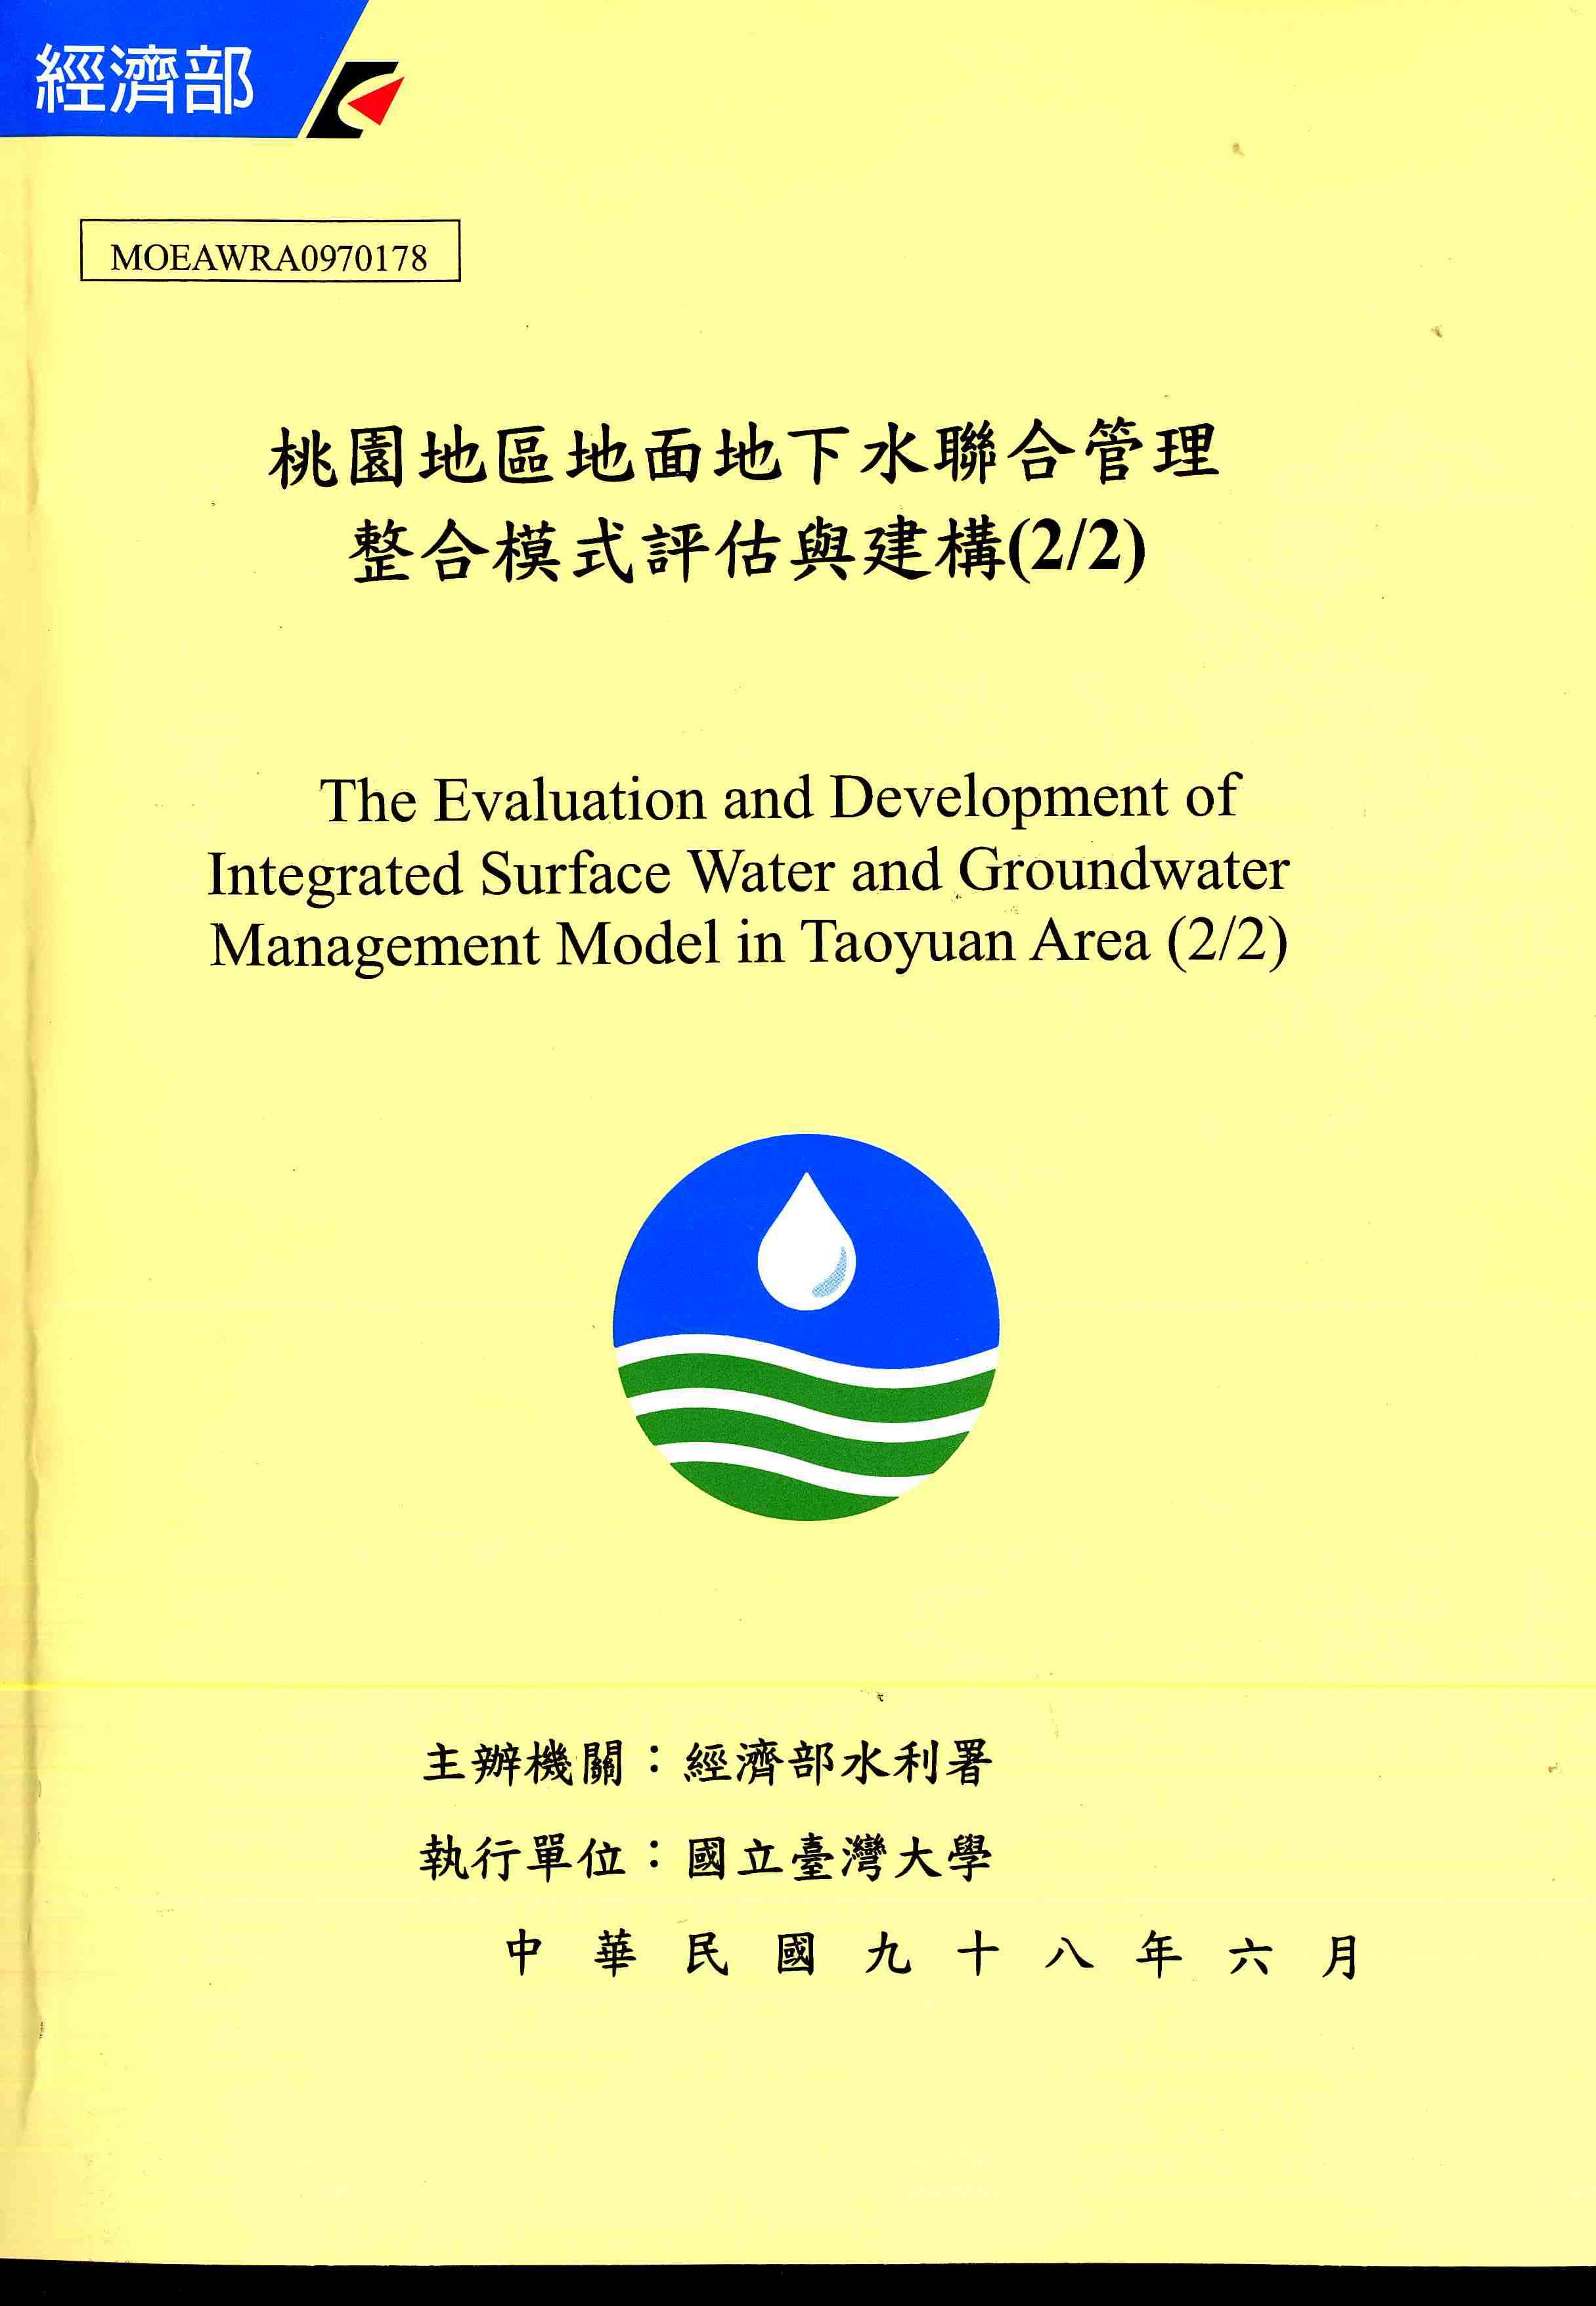 桃園地區地面地下水聯合管理整合模式評估與建構(2/2)